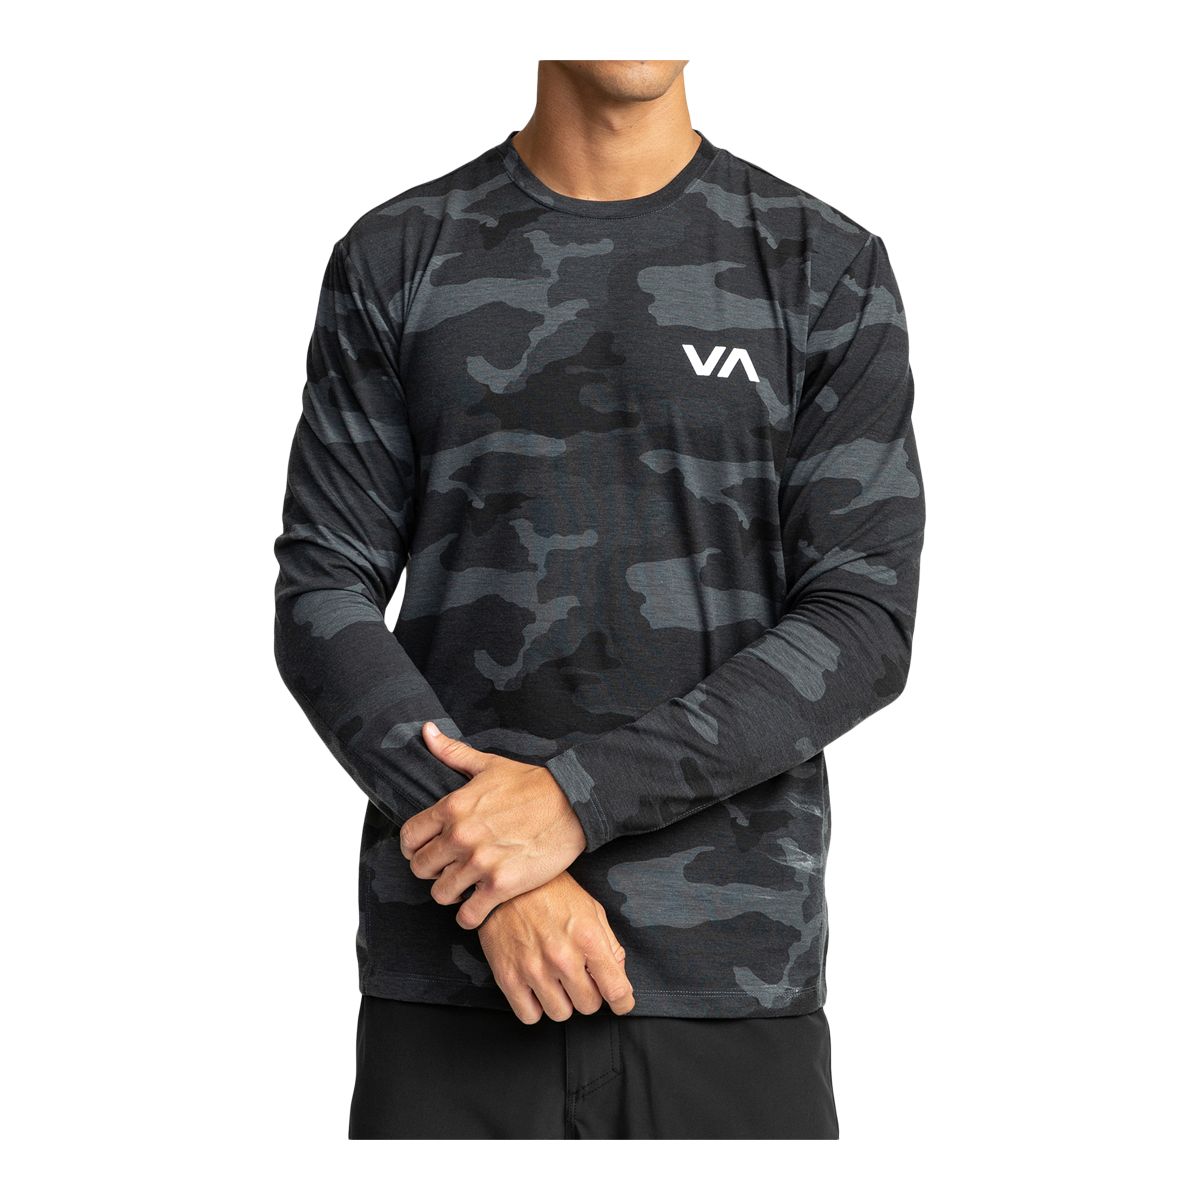 RVCA Mark Sport T-Shirt - Men's T-Shirts in Black